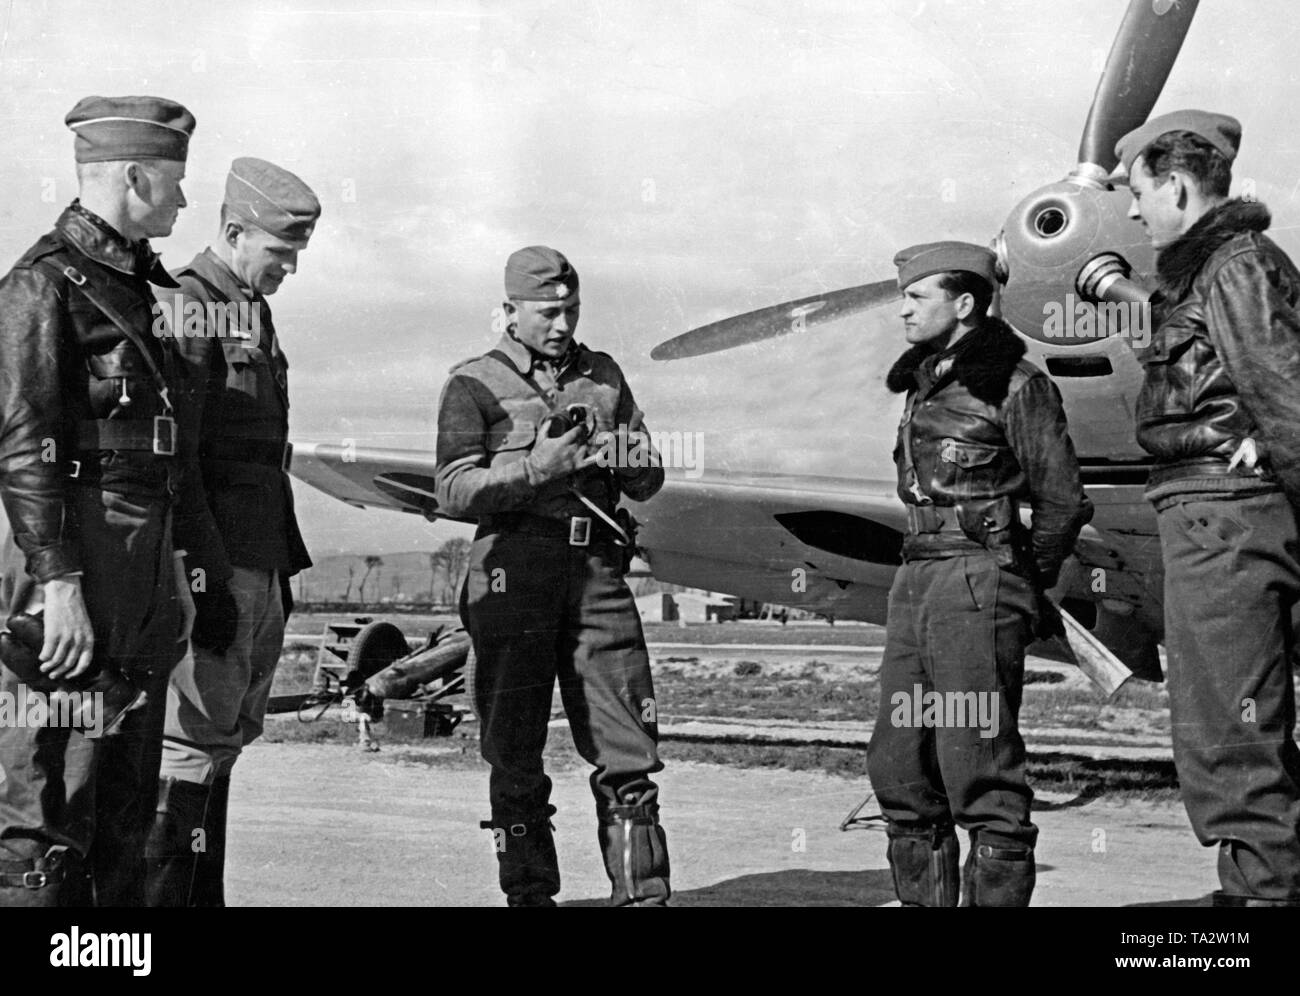 Photo de quatre jeunes agents de la Fliegertruppe (air force) des troupes de la légion Condor en conversation avec un capitaine (milieu) en face d'un avion de chasse allemand du type Messerschmitt Bf 109 B , à un aérodrome en Espagne. Ici, le canon de la mitrailleuse dans le creux du nez de l'hélice. Banque D'Images